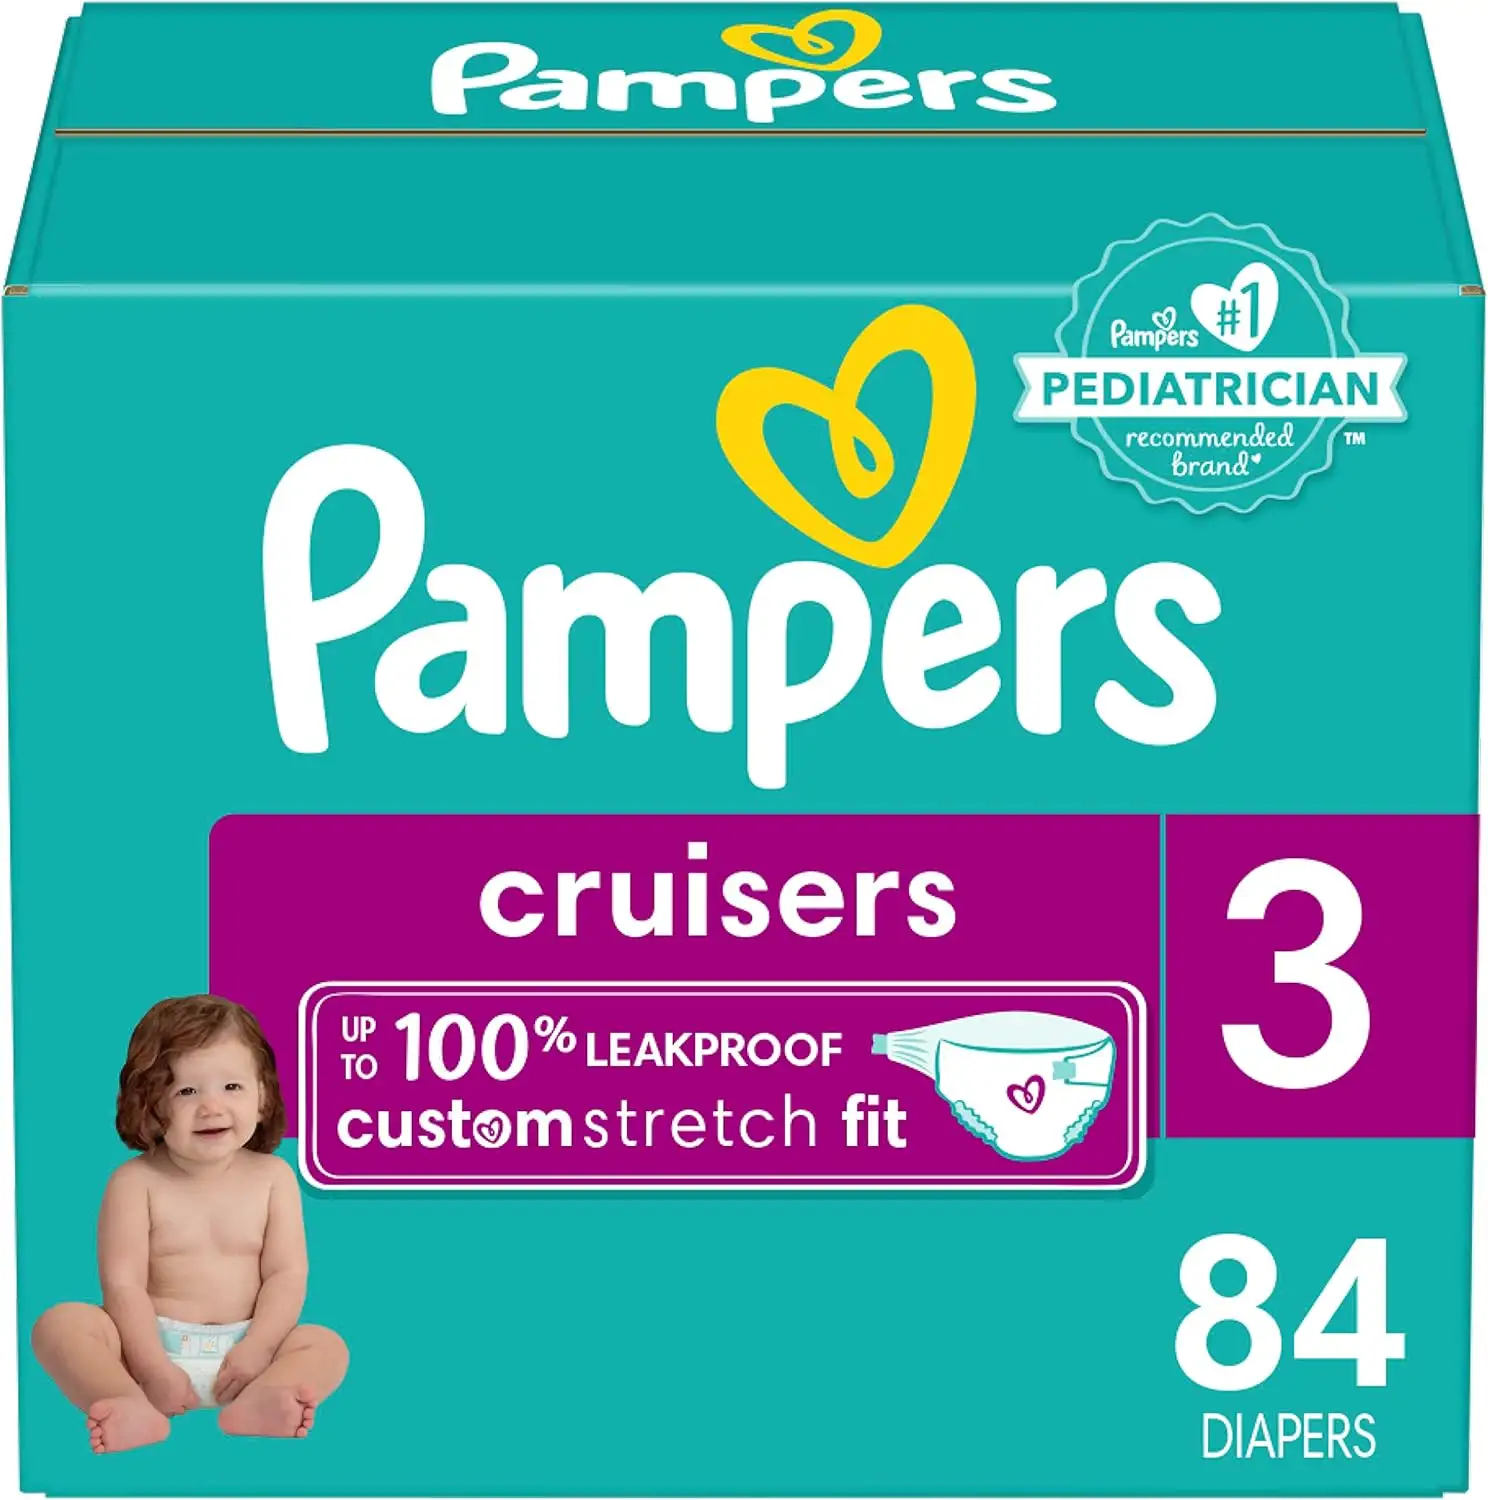 Fraldas Pampers Cruisers - Tamanho 3, 84 contagem, fraldas descartáveis ativas para bebês com estiramento personalizado